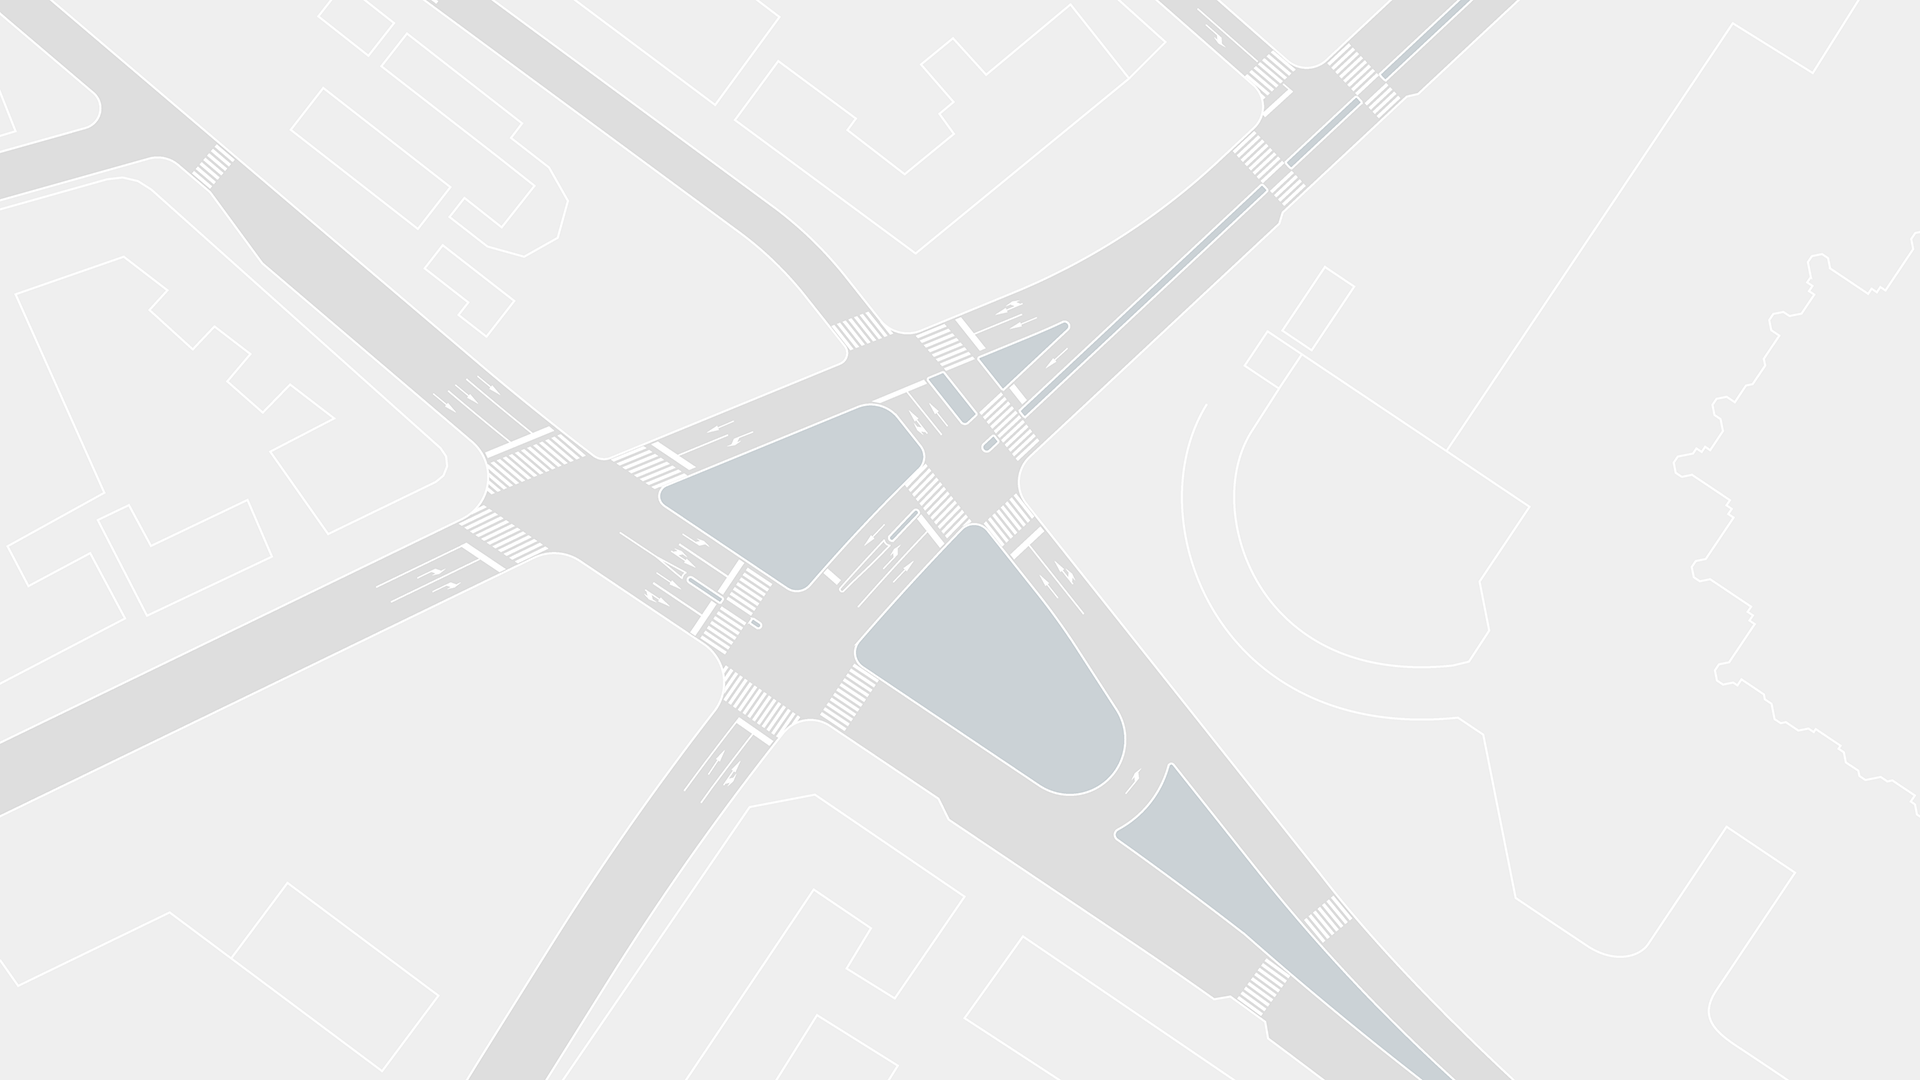 Road design revision for Kropotkinskaya junction